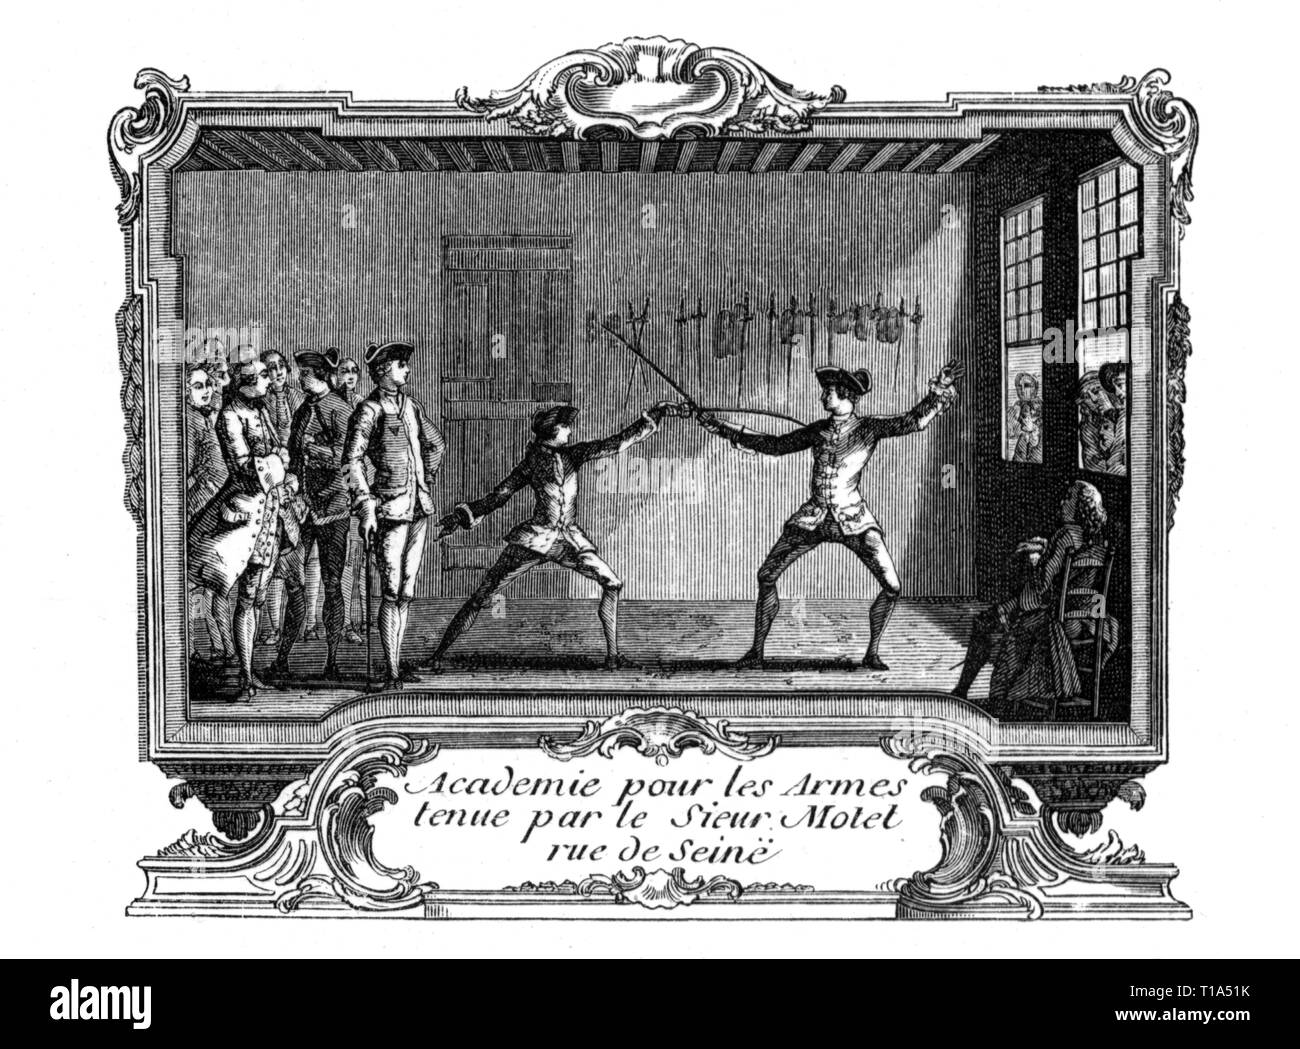 Le sport, l'escrime, les tireurs au cours d'exercices, Paris, gravure sur cuivre, France, 18e siècle, l'artiste n'a pas d'auteur pour être effacé Banque D'Images